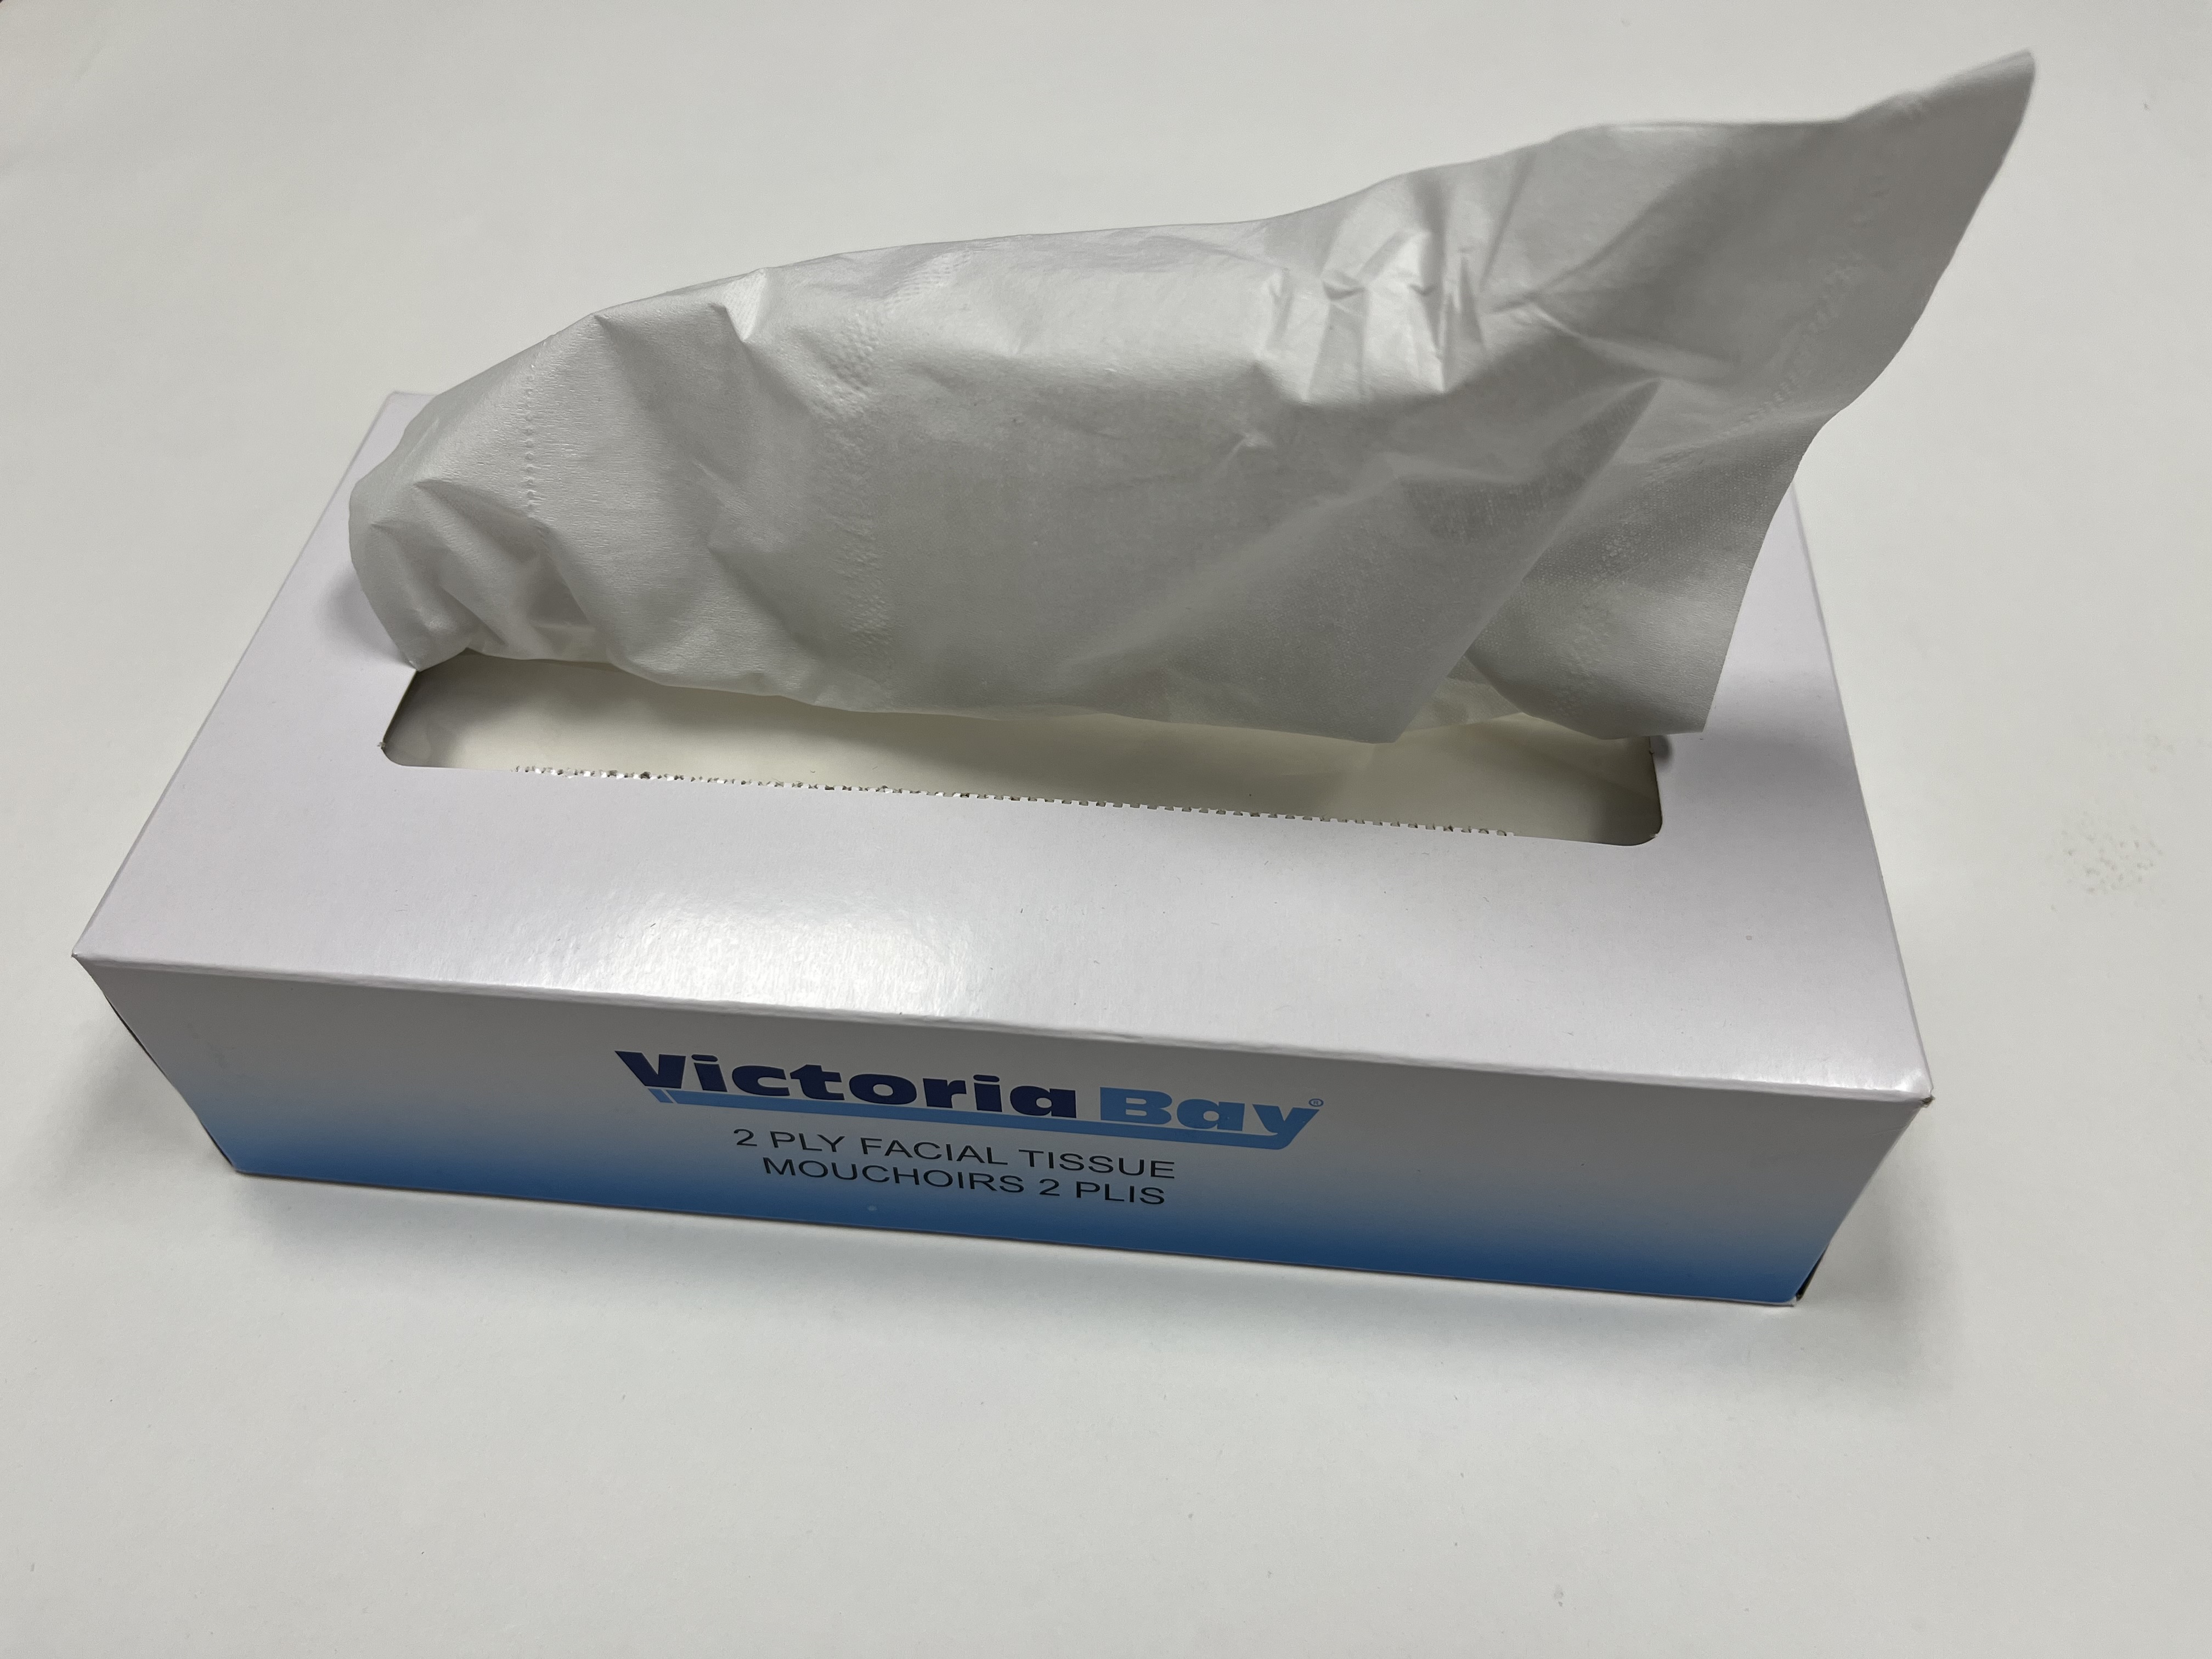 Victoria Bay Facial Tissue - 2 Ply